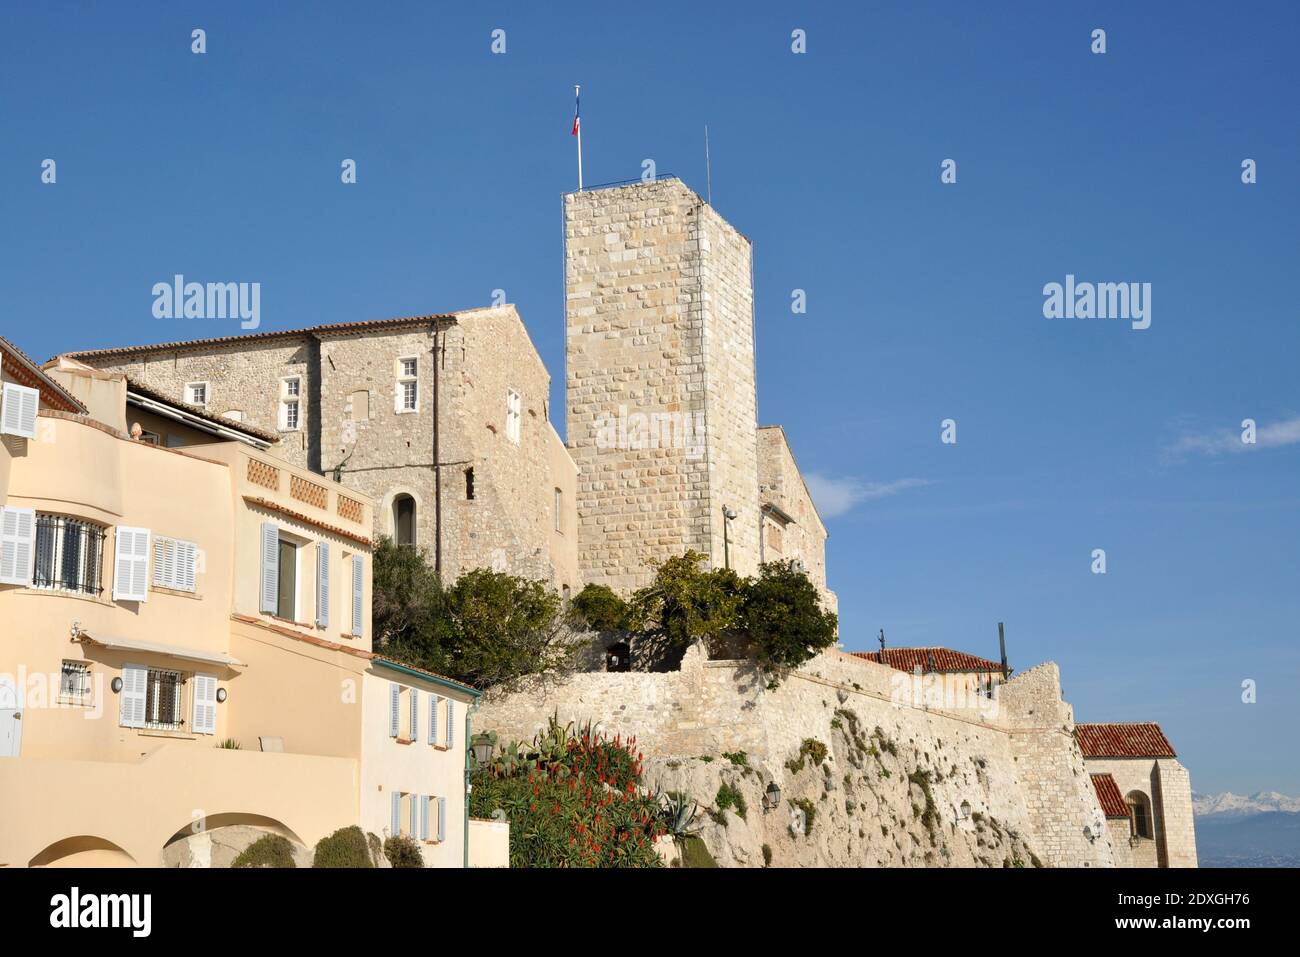 Francia, costa azzurra, Antibes, il castello di Grimaldi è classificato monumento storico, oggi è un museo dedicato a un famoso artista surrealista. Foto Stock